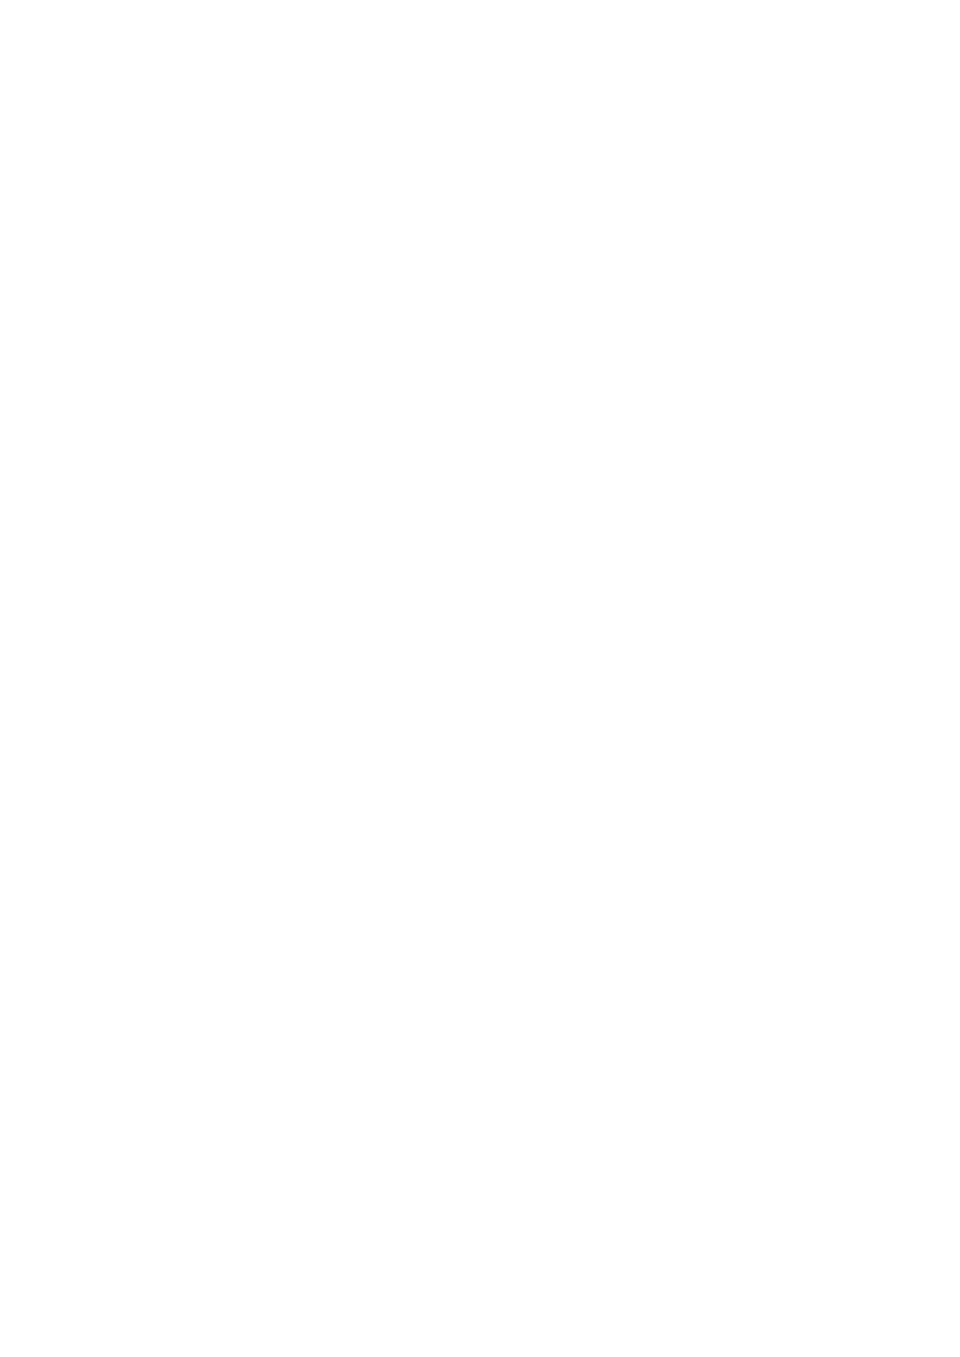 kerület Hősök tere) című alkotásának időszakos elmozdítására Előterjesztő: Szalay-Bobrovniczky Alexandra Előterjesztés előkészítő: Kulturális, Sport, Köznevelési, Egészségügyi és Szociálpolitikai